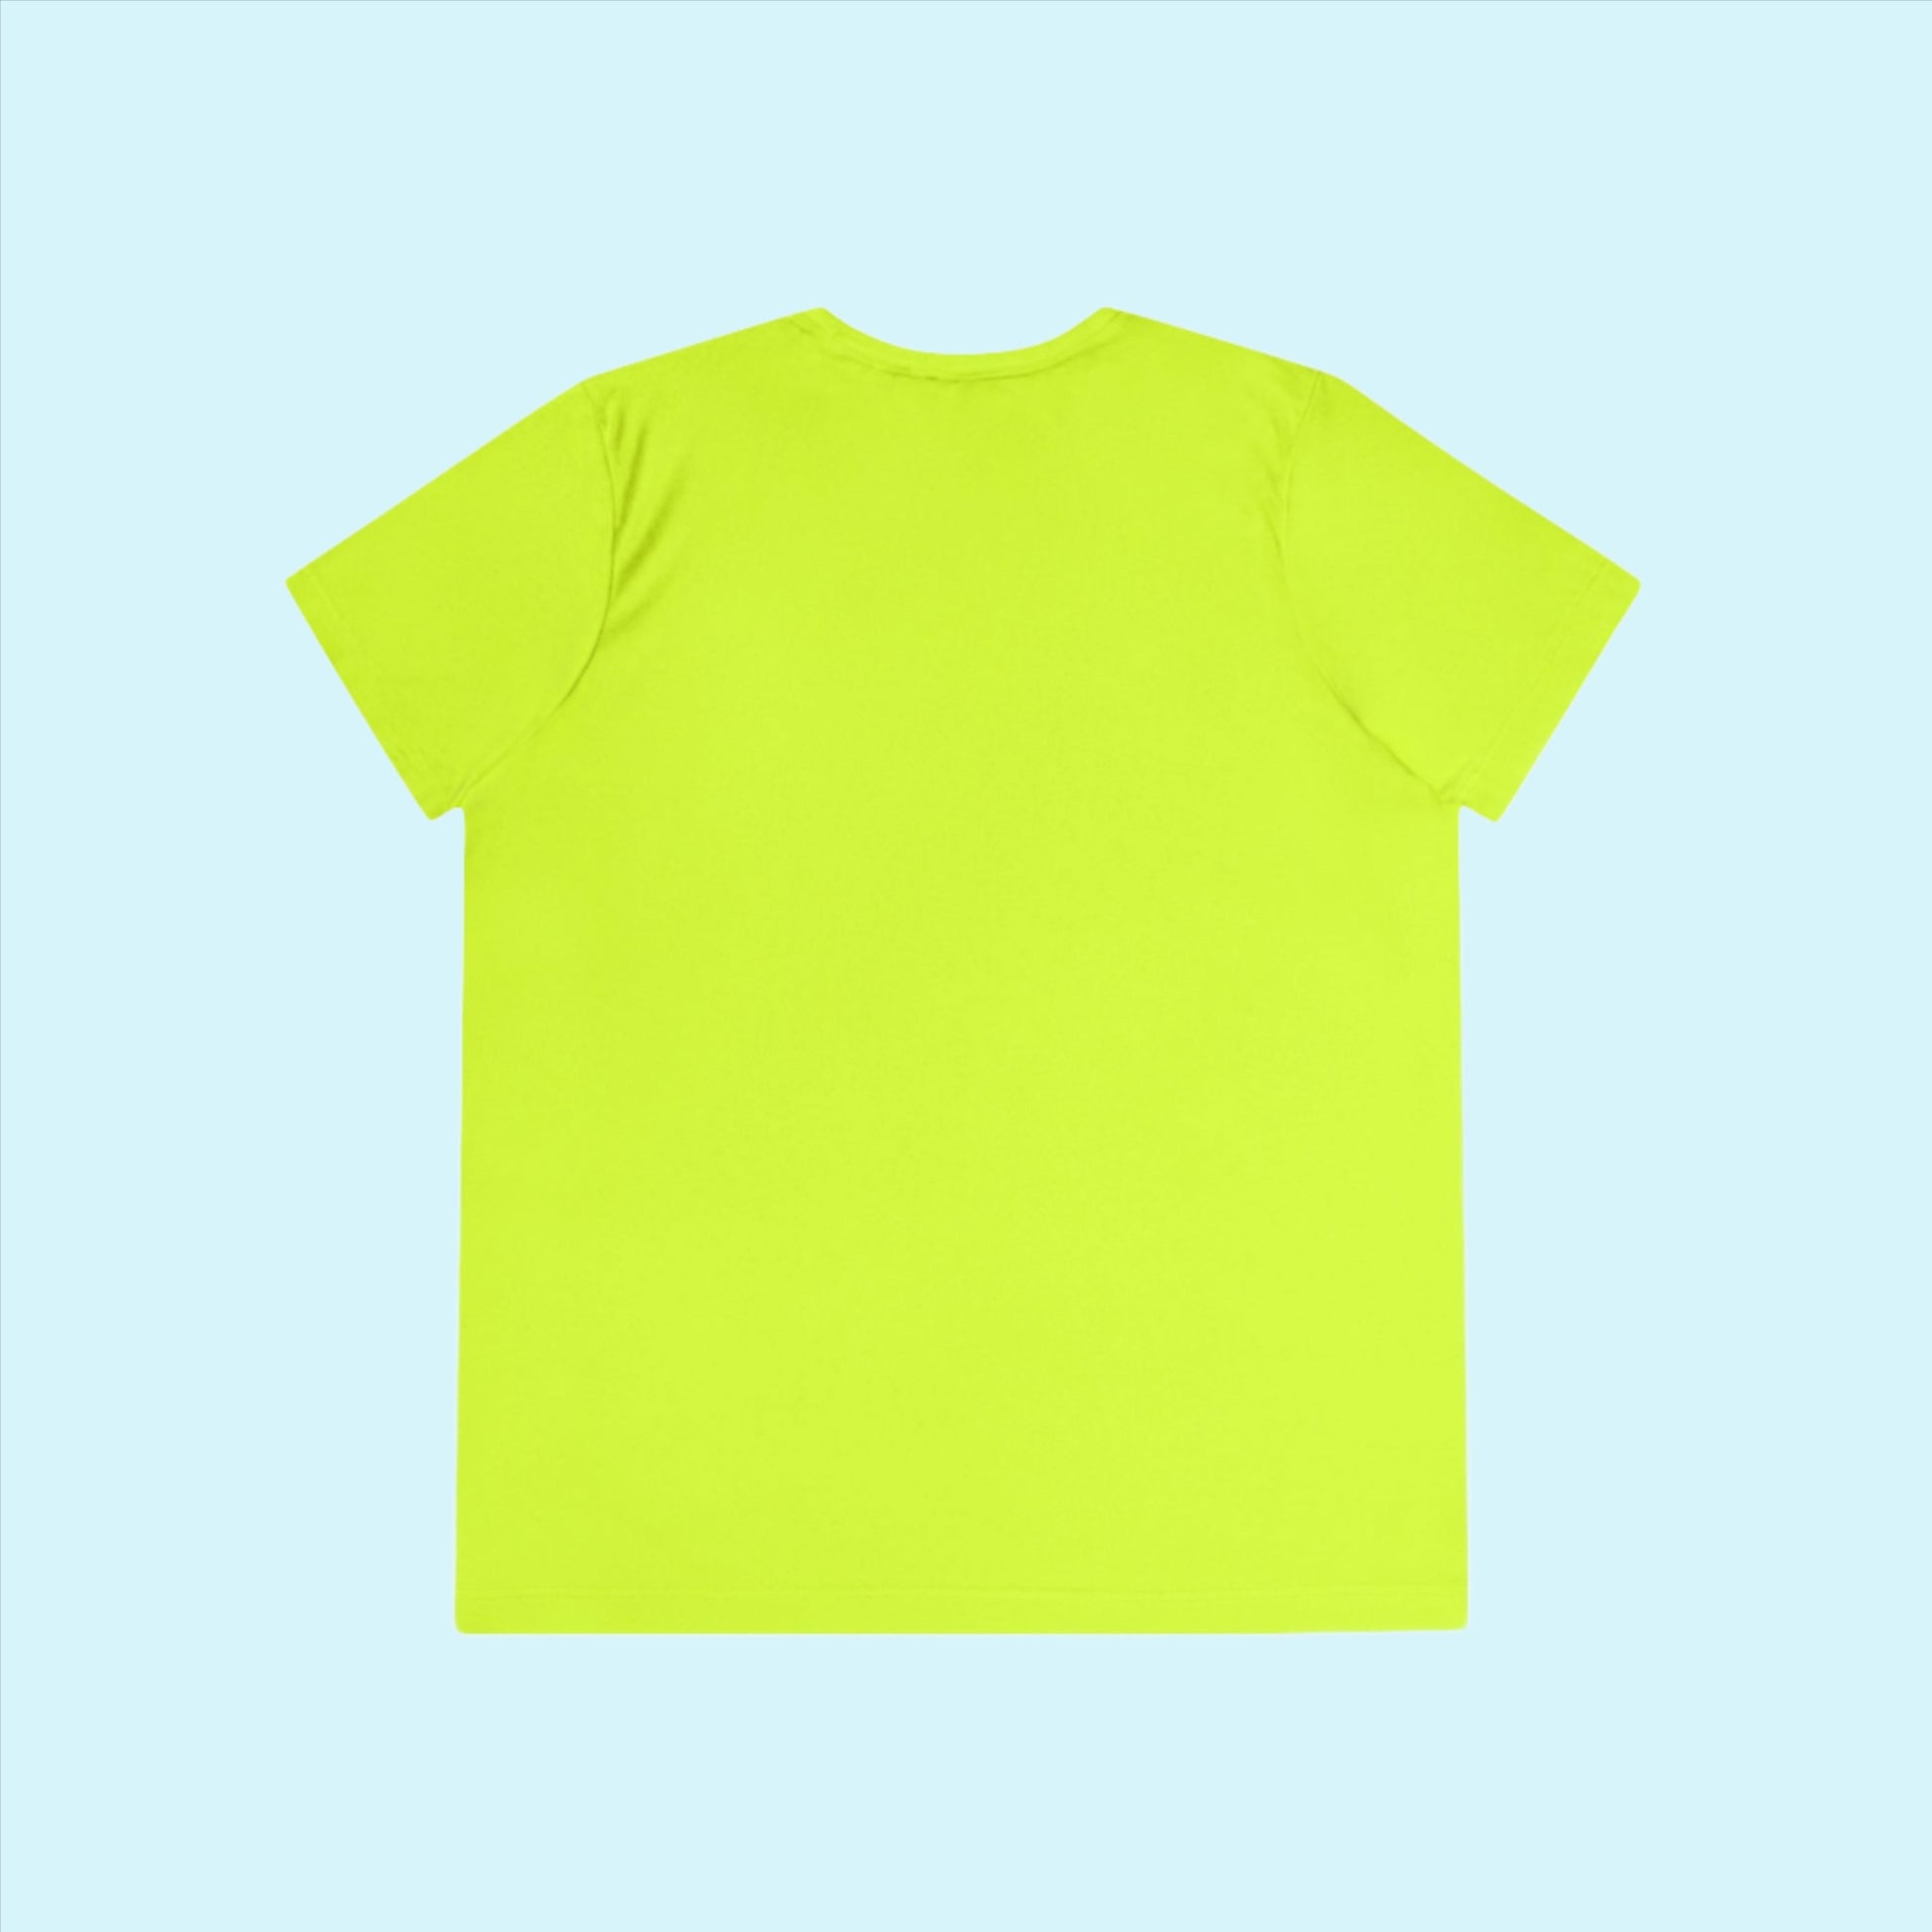 Neon Yellow Women's Run Club Moisture Wicking Tee